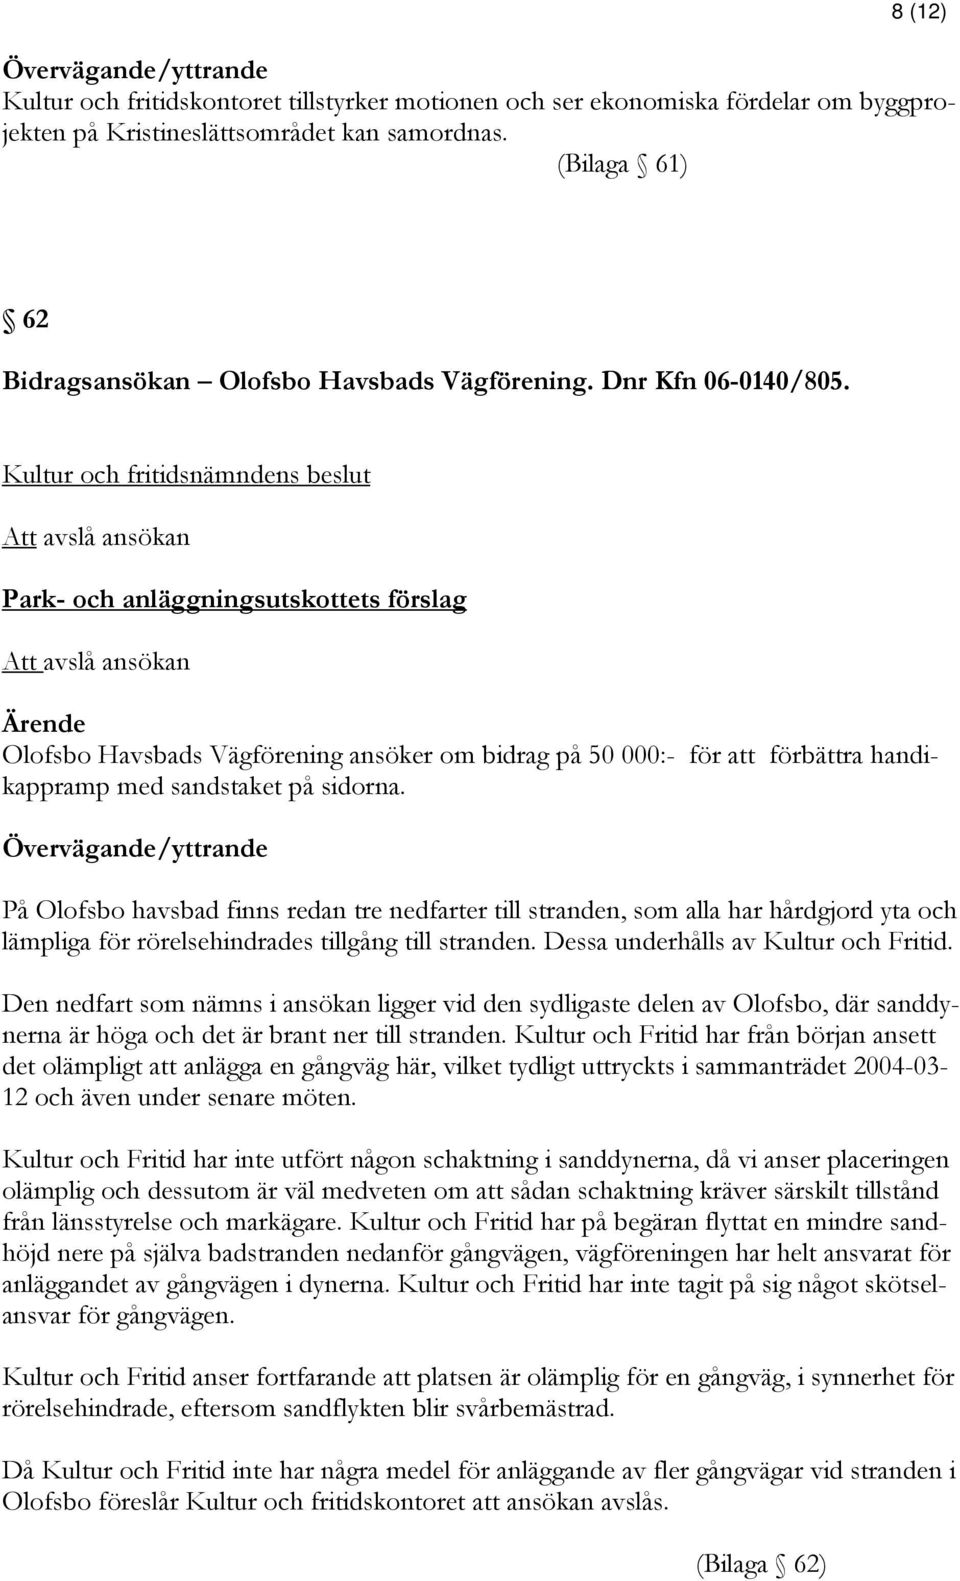 Att avslå ansökan Park- och anläggningsutskottets förslag Att avslå ansökan Olofsbo Havsbads Vägförening ansöker om bidrag på 50 000:- för att förbättra handikappramp med sandstaket på sidorna.